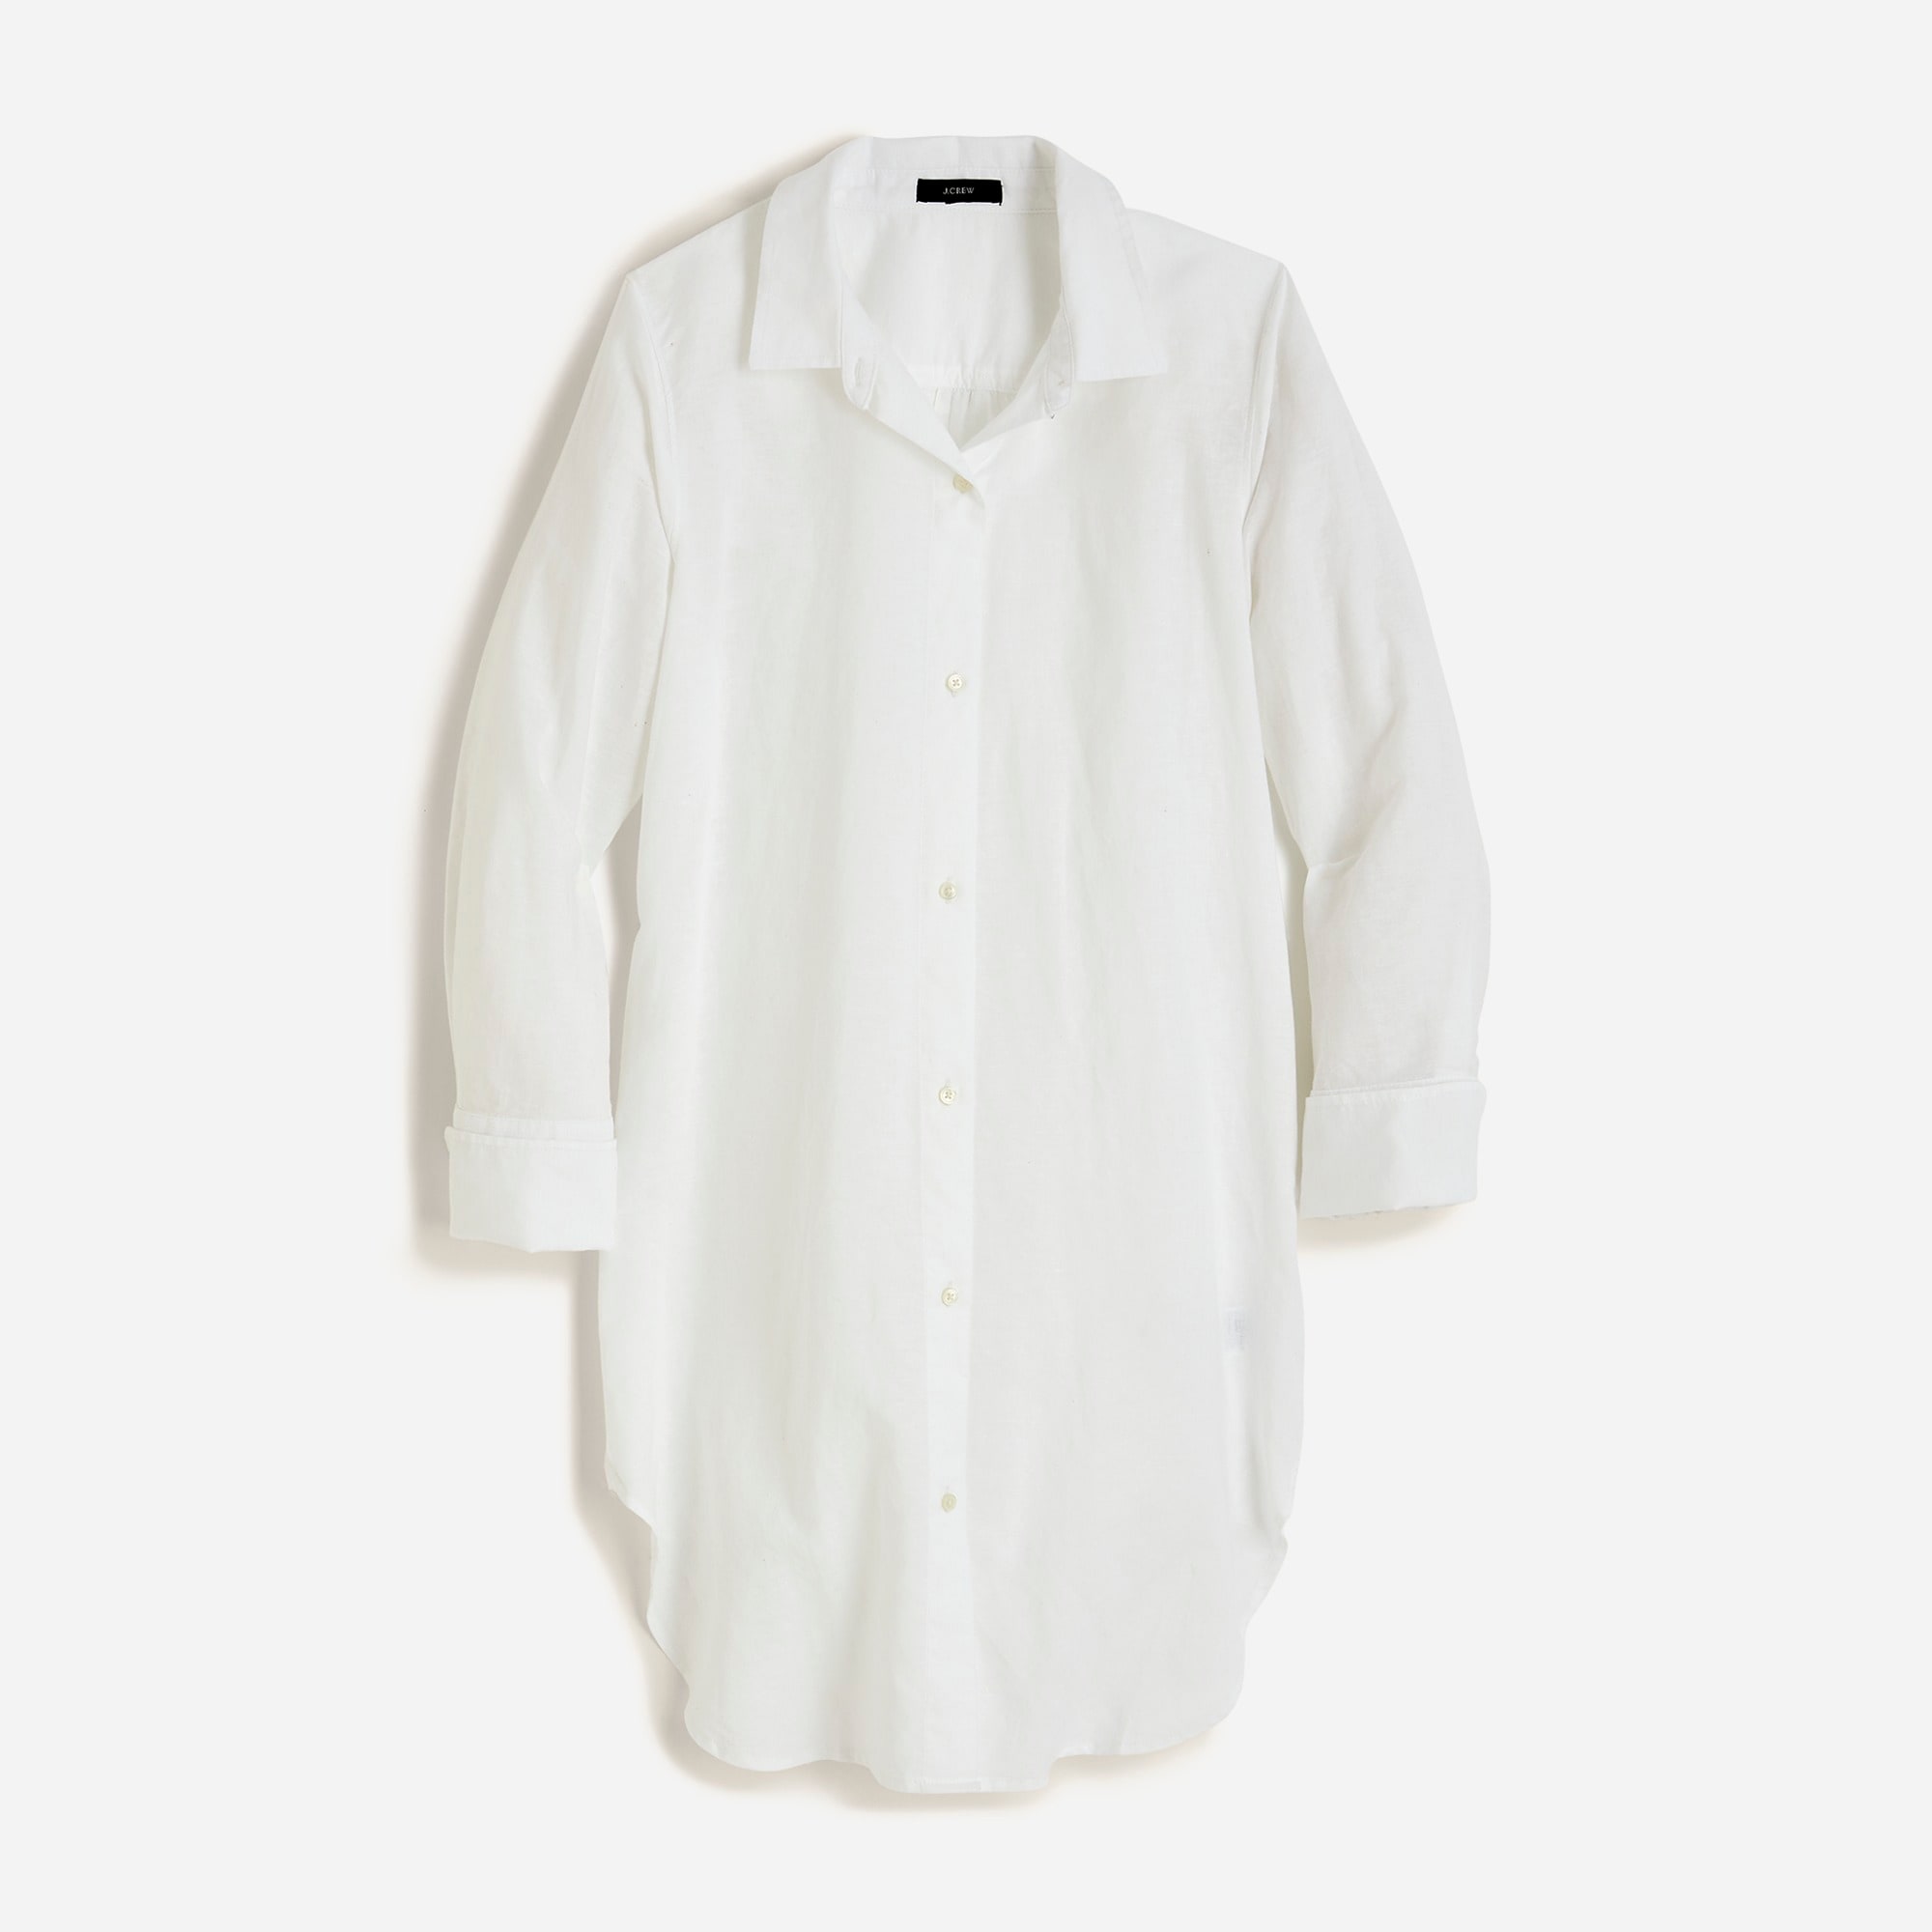  Classic-fit beach shirt in linen-cotton blend